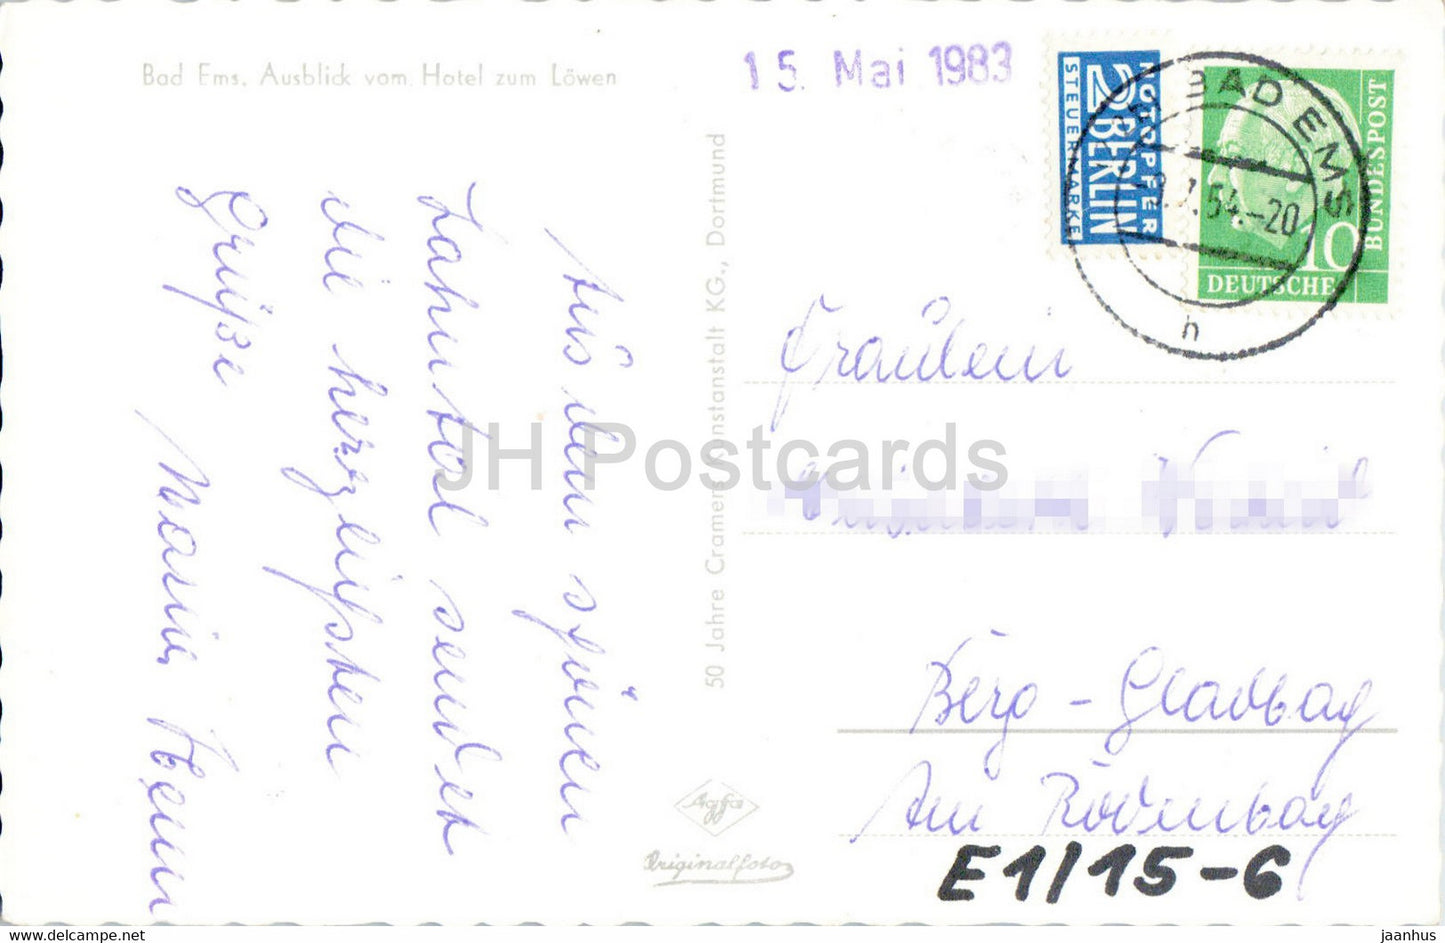 Bad Ems - Ausblick vom Hotel zum Lowen - pont - carte postale ancienne - 1954 - Allemagne - utilisé